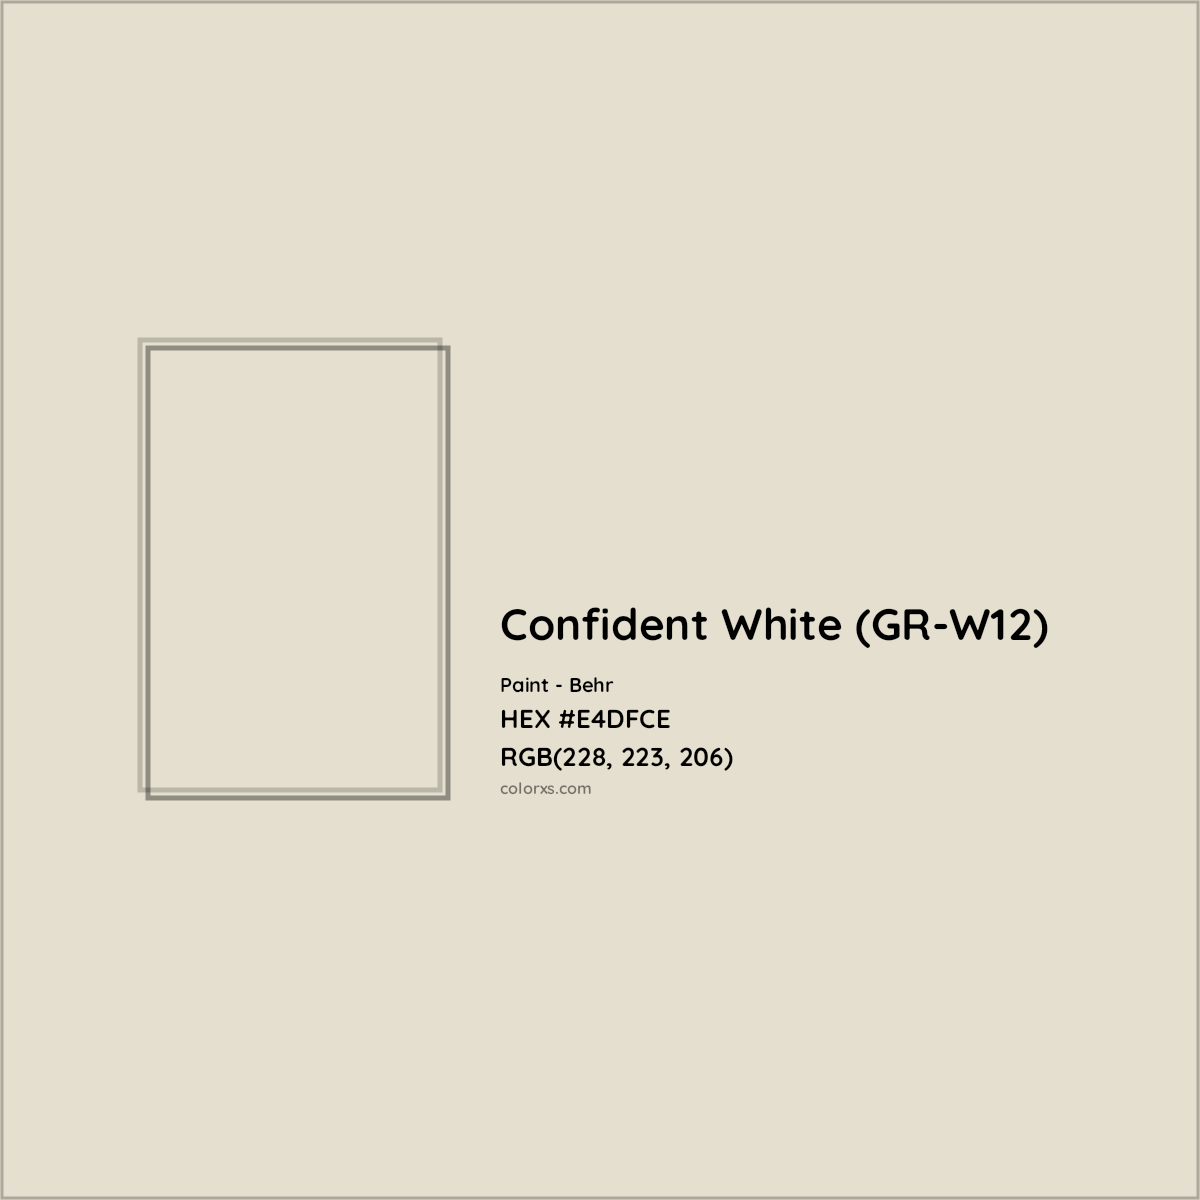 HEX #E4DFCE Confident White (GR-W12) Paint Behr - Color Code